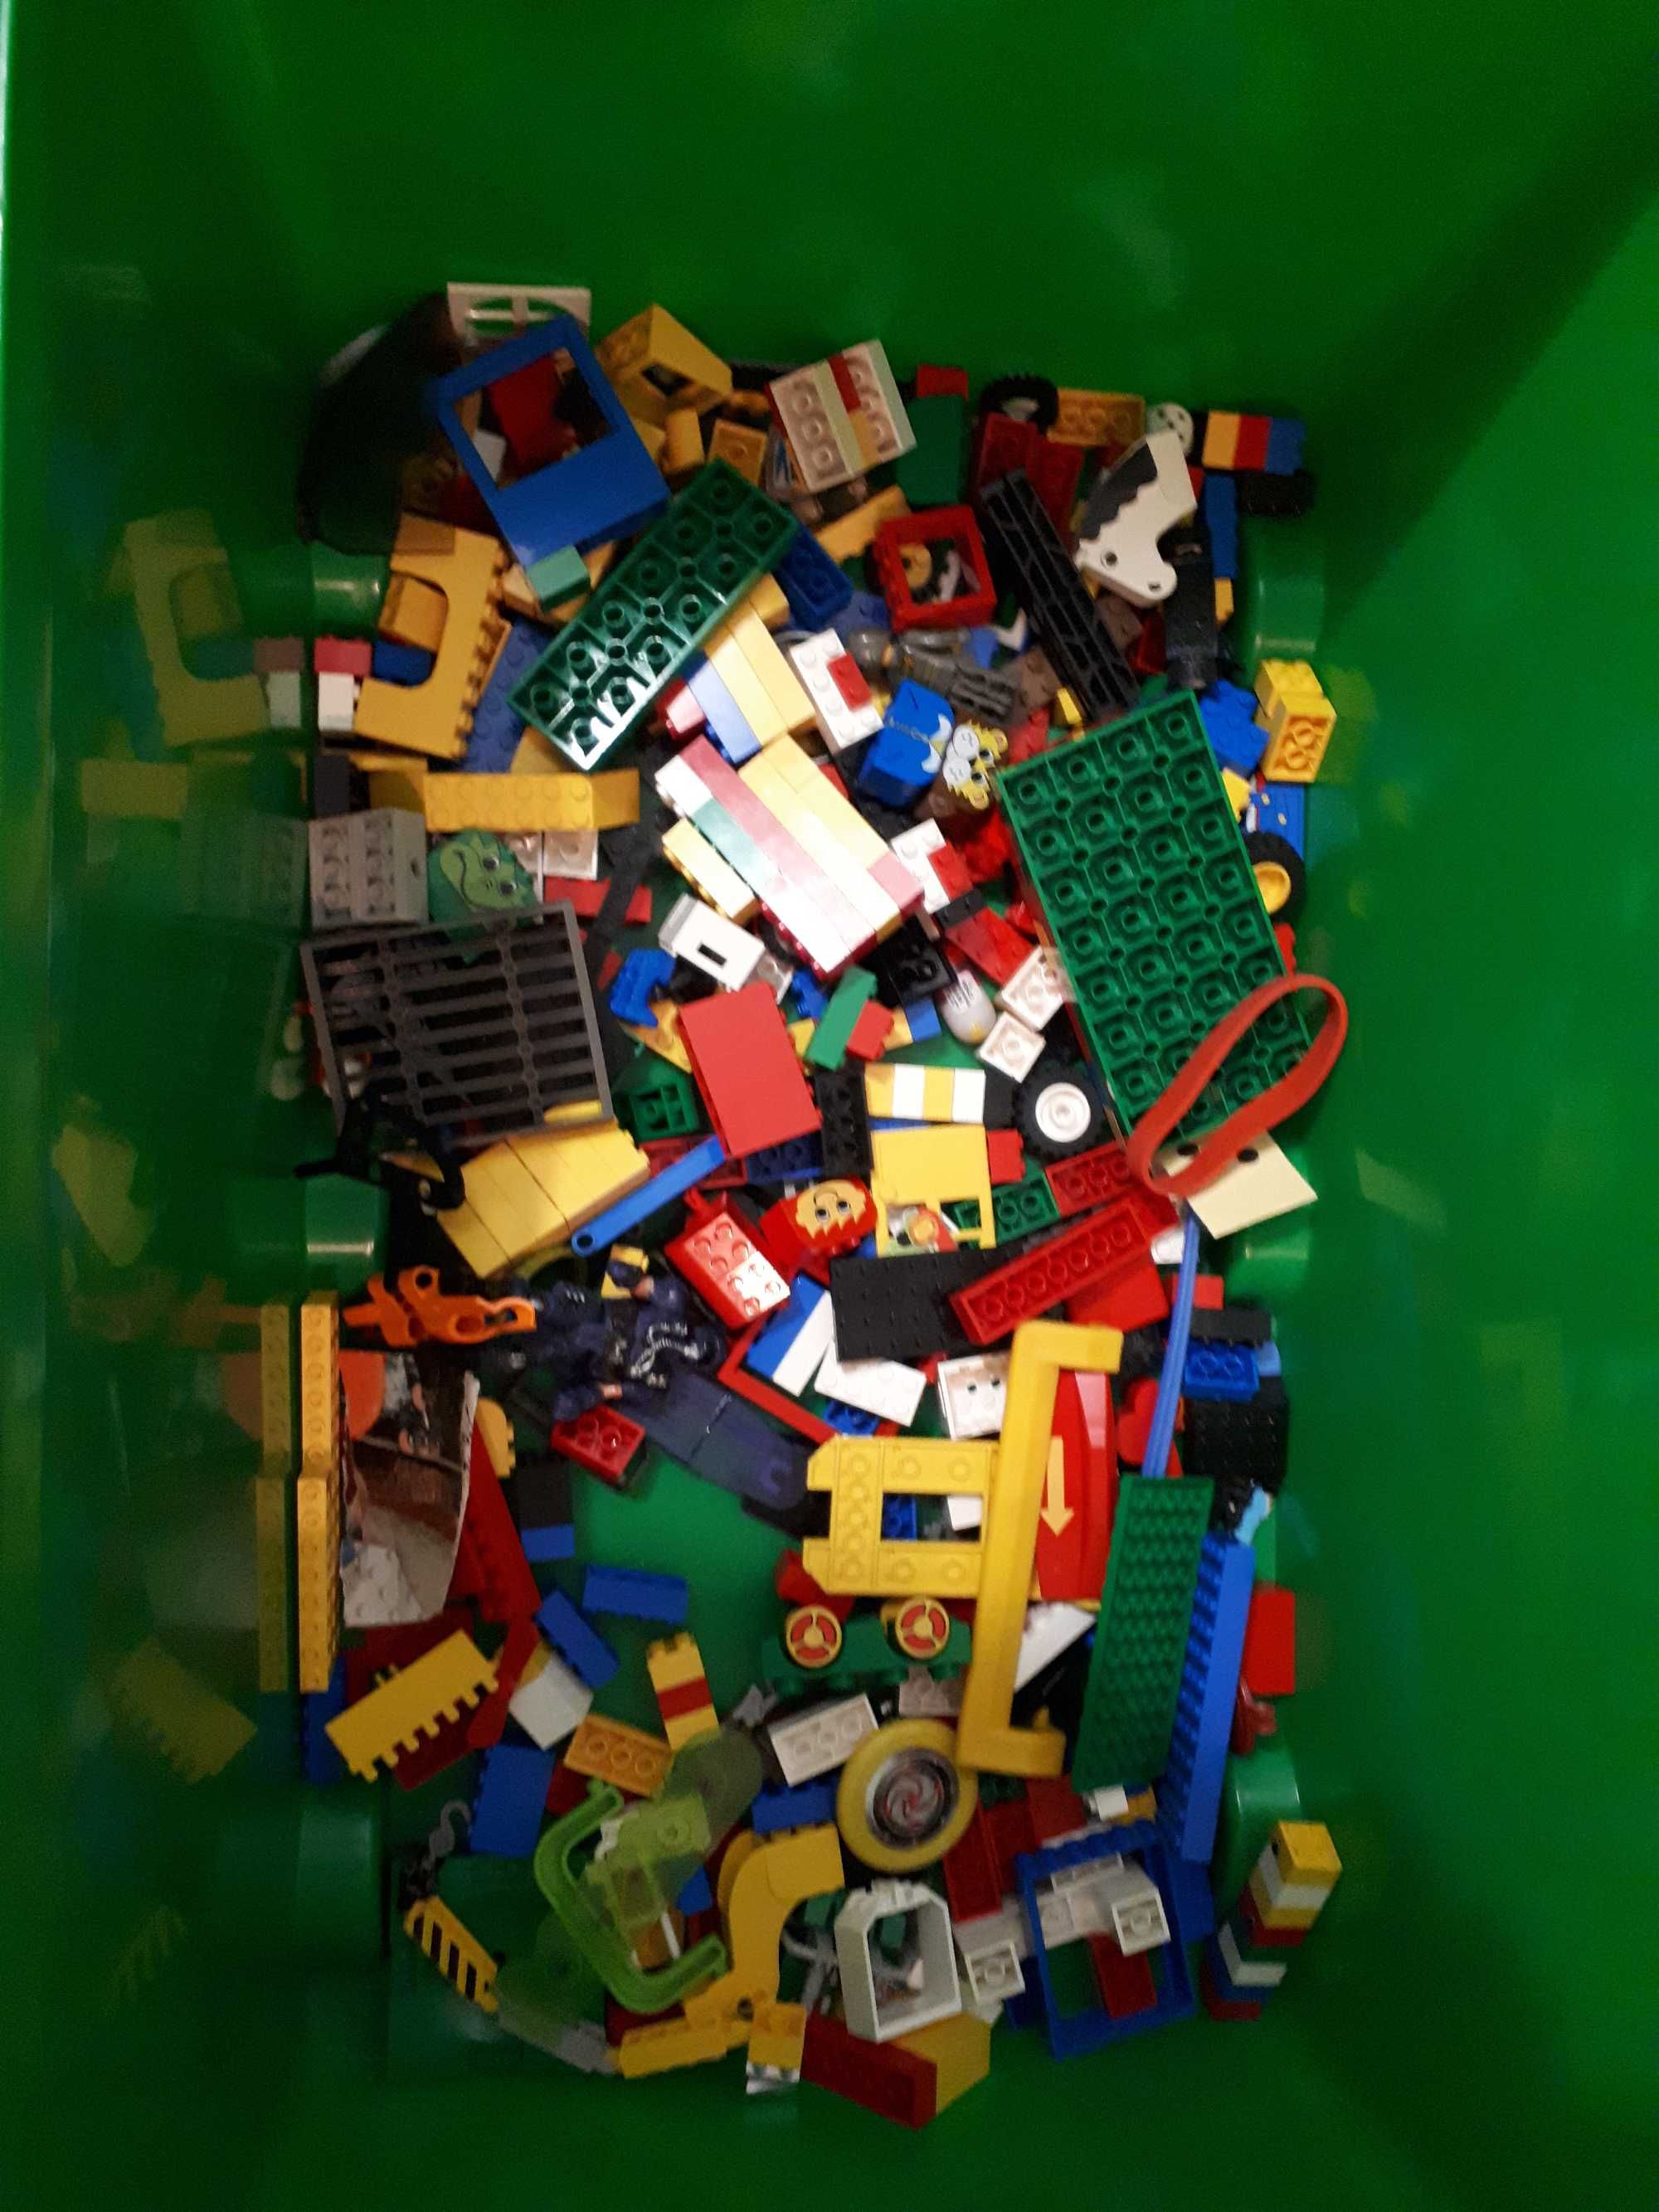 LEGO zbieranina, mało co w komplecie 2,4kg